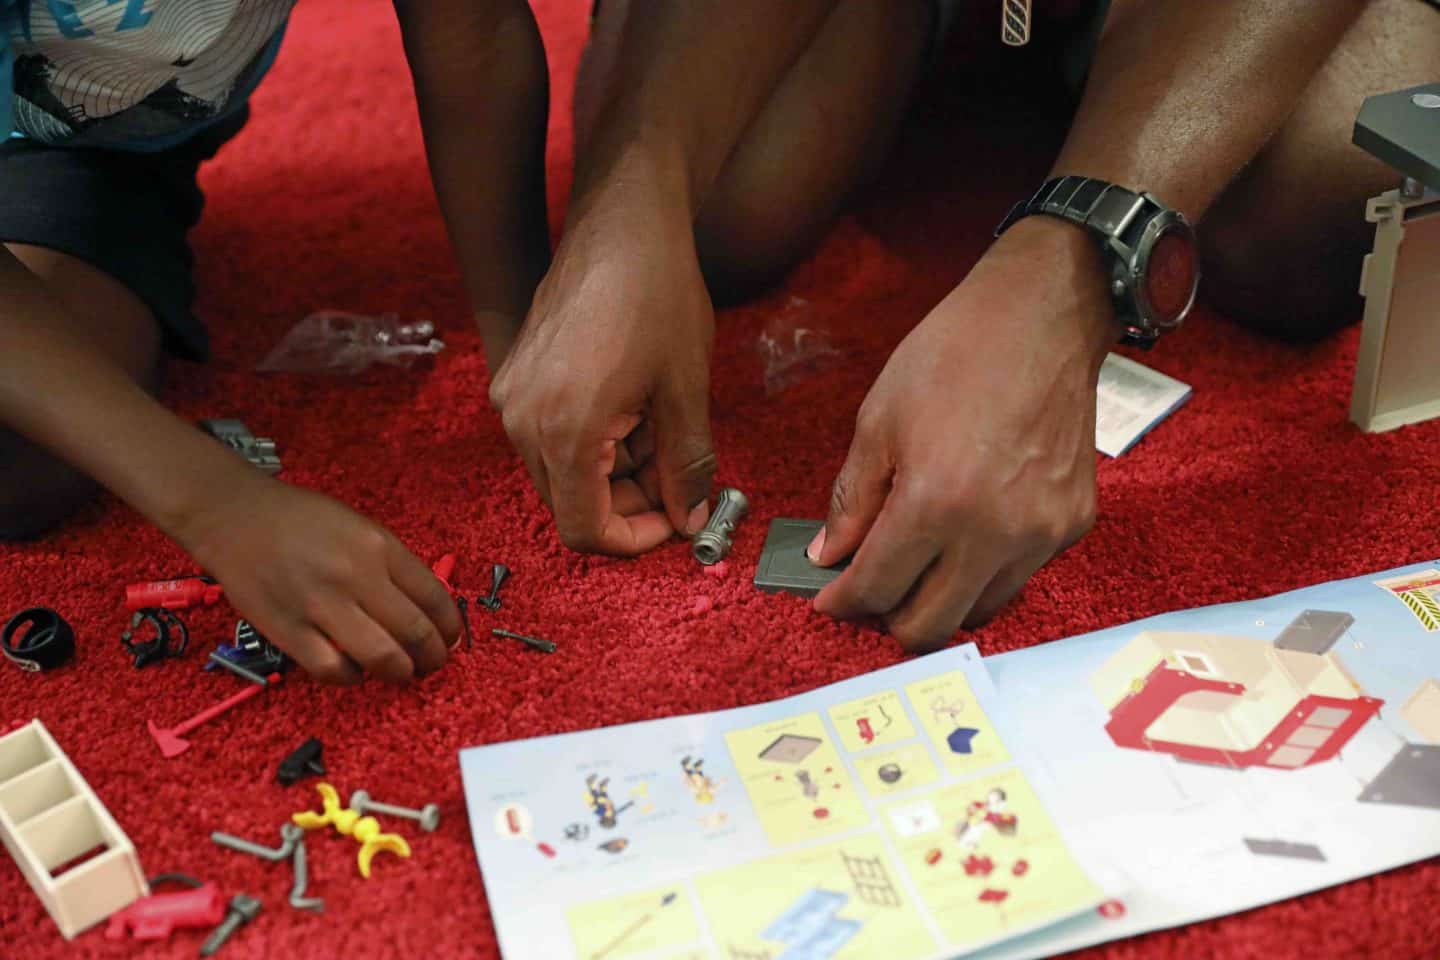 ways to encourage creativity in kids through toys